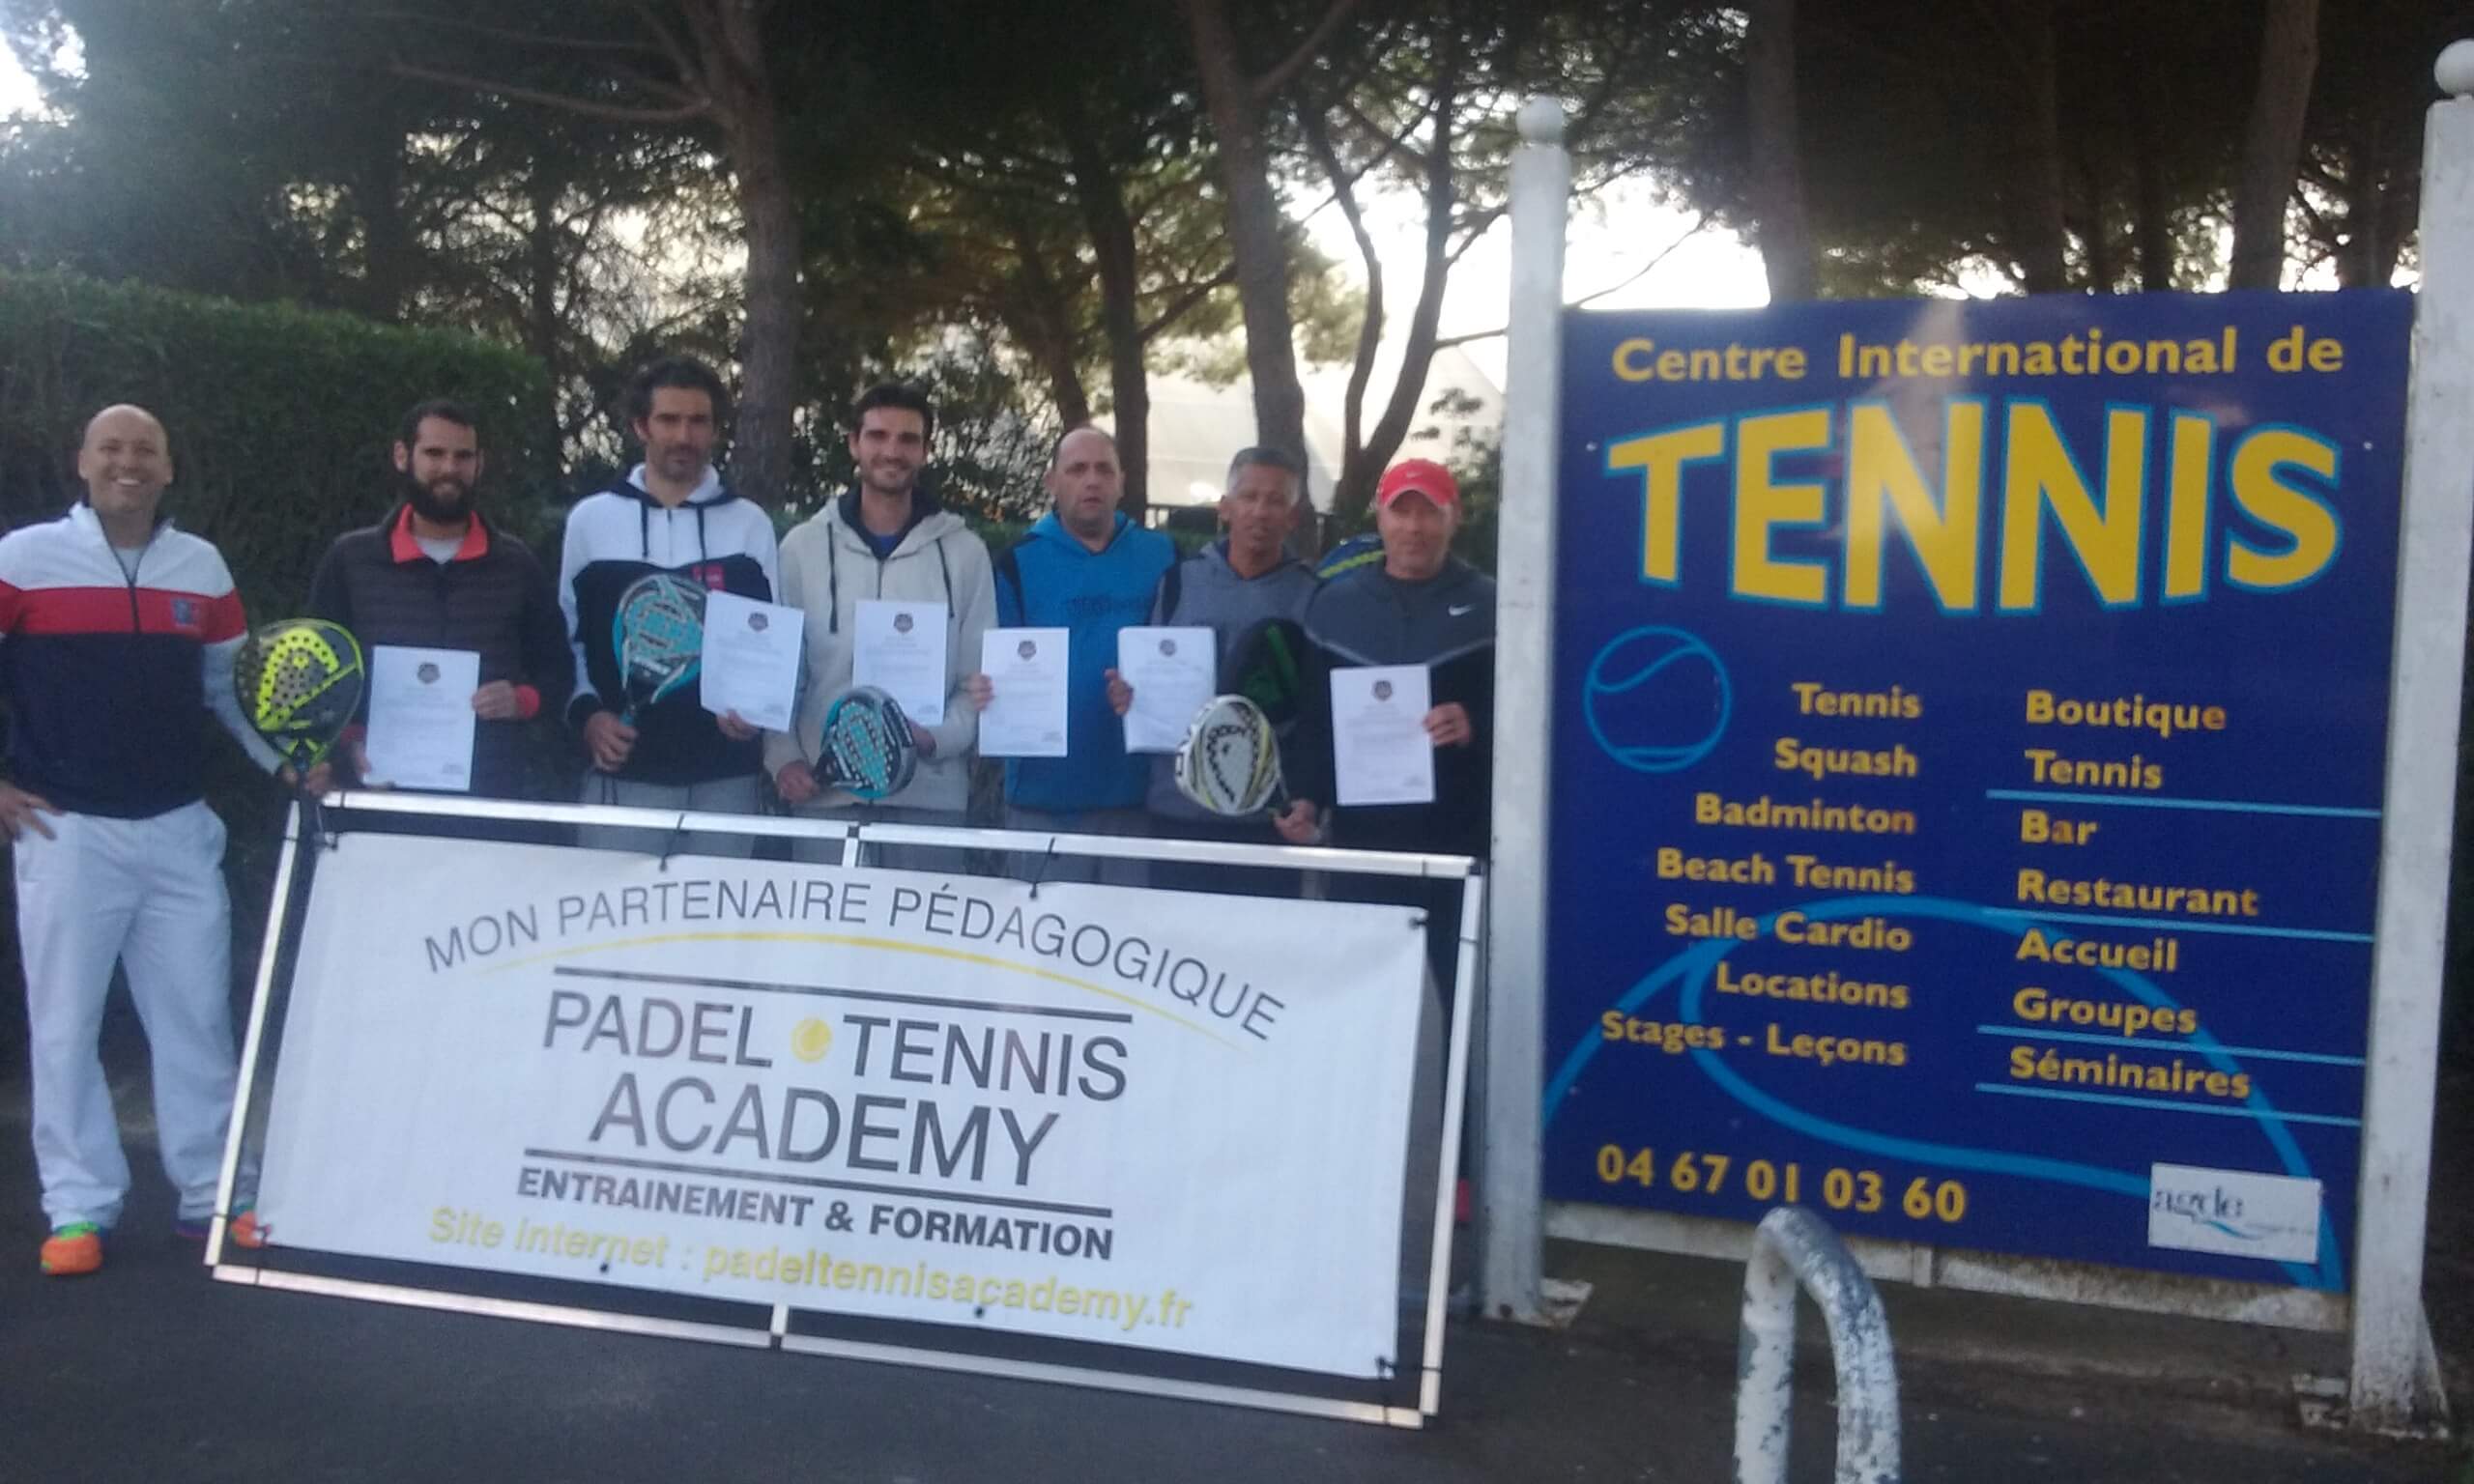 De Tennis CI / Padel van Cap d'Agde is gestructureerd